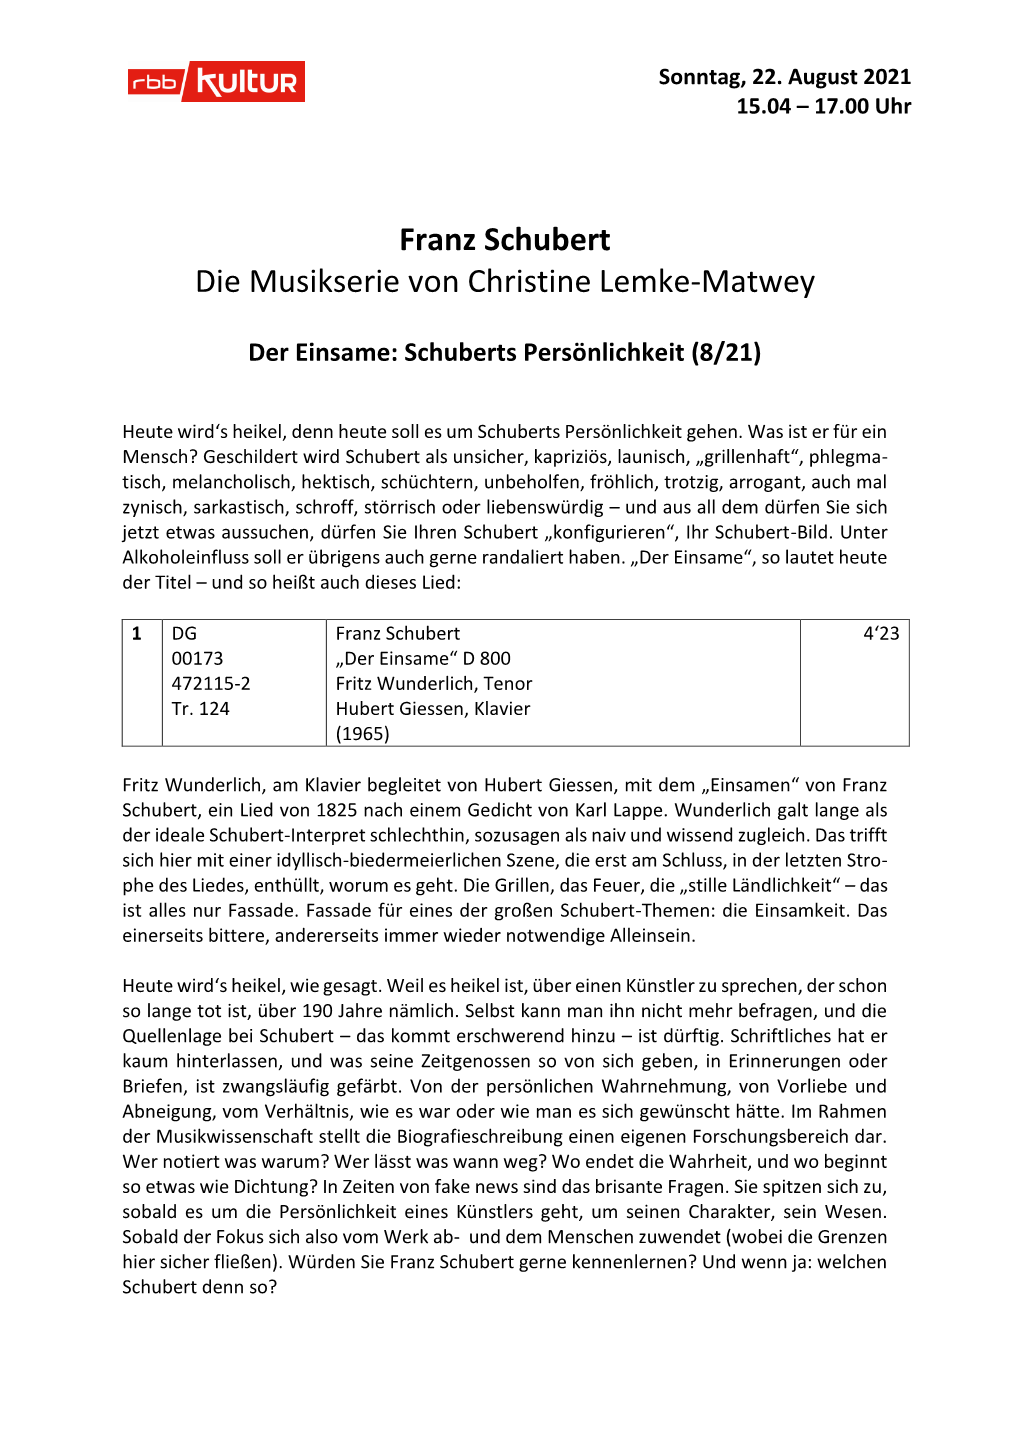 Franz Schubert Die Musikserie Von Christine Lemke-Matwey